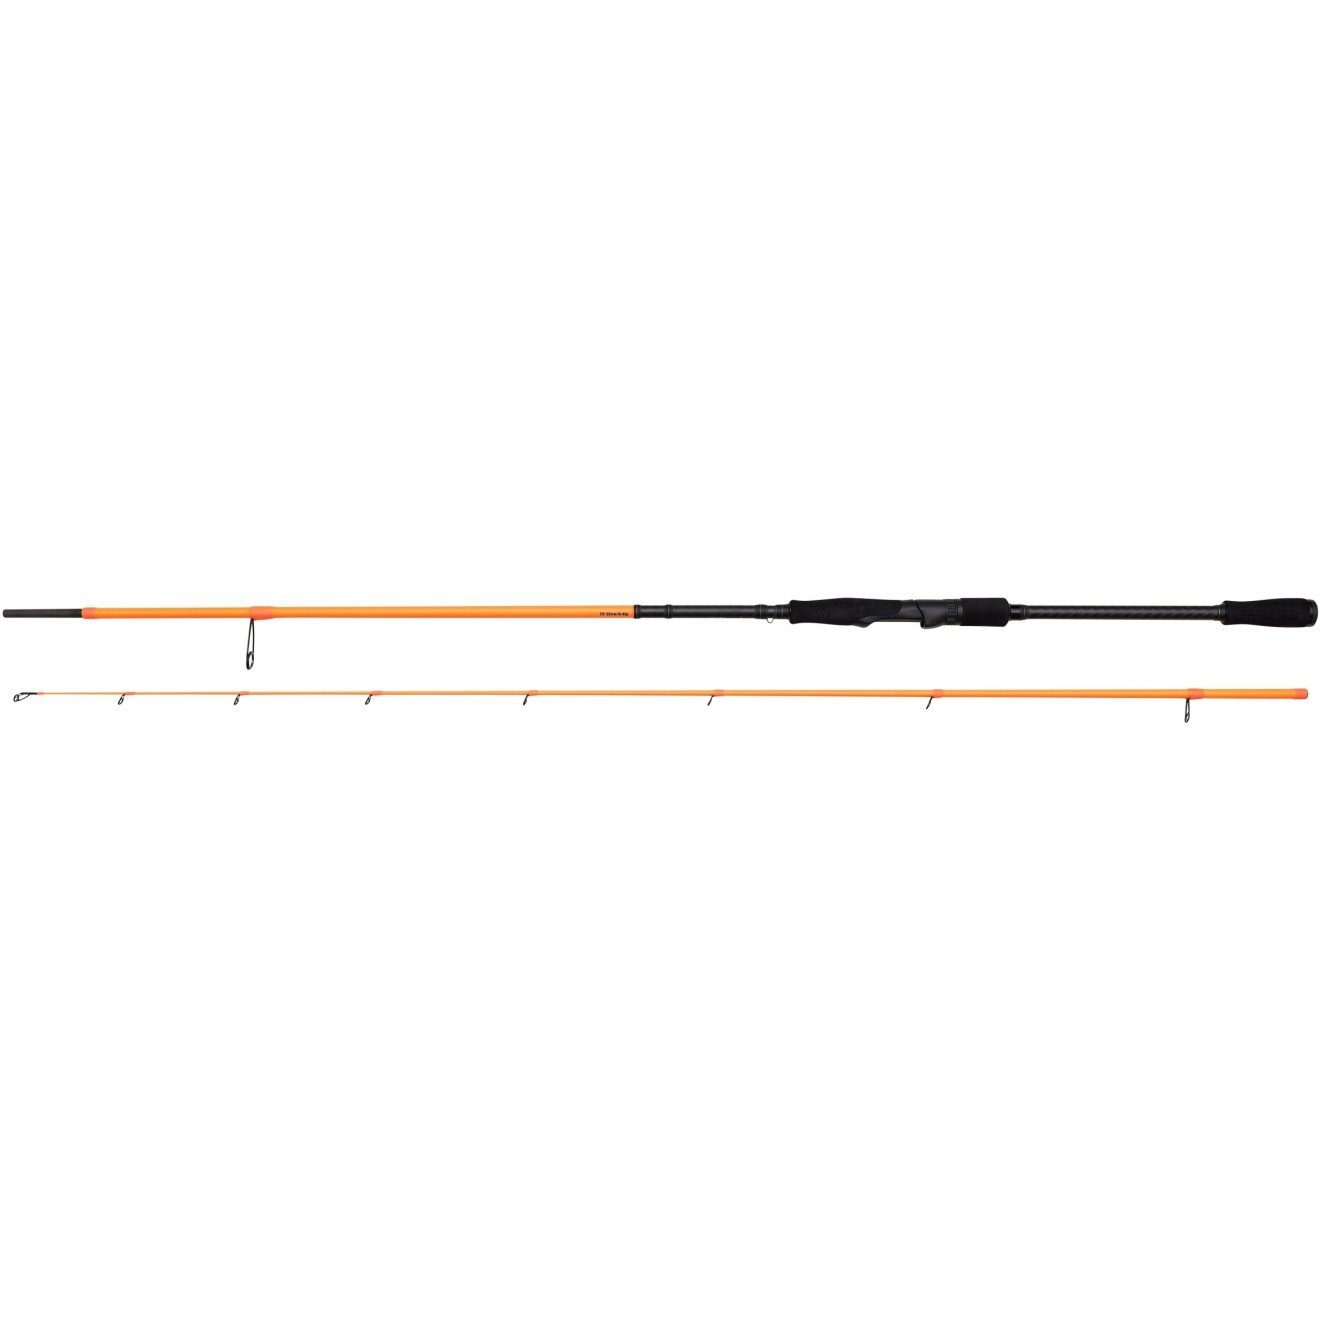 Savage Gear Spinnrute Orange Perfekt Game Rod Spin 2,21m Medium optimales WG_7-25g Angelruten, 2,13m LTD für Gefühl ein 2,69m 2,51m ausbalanciert